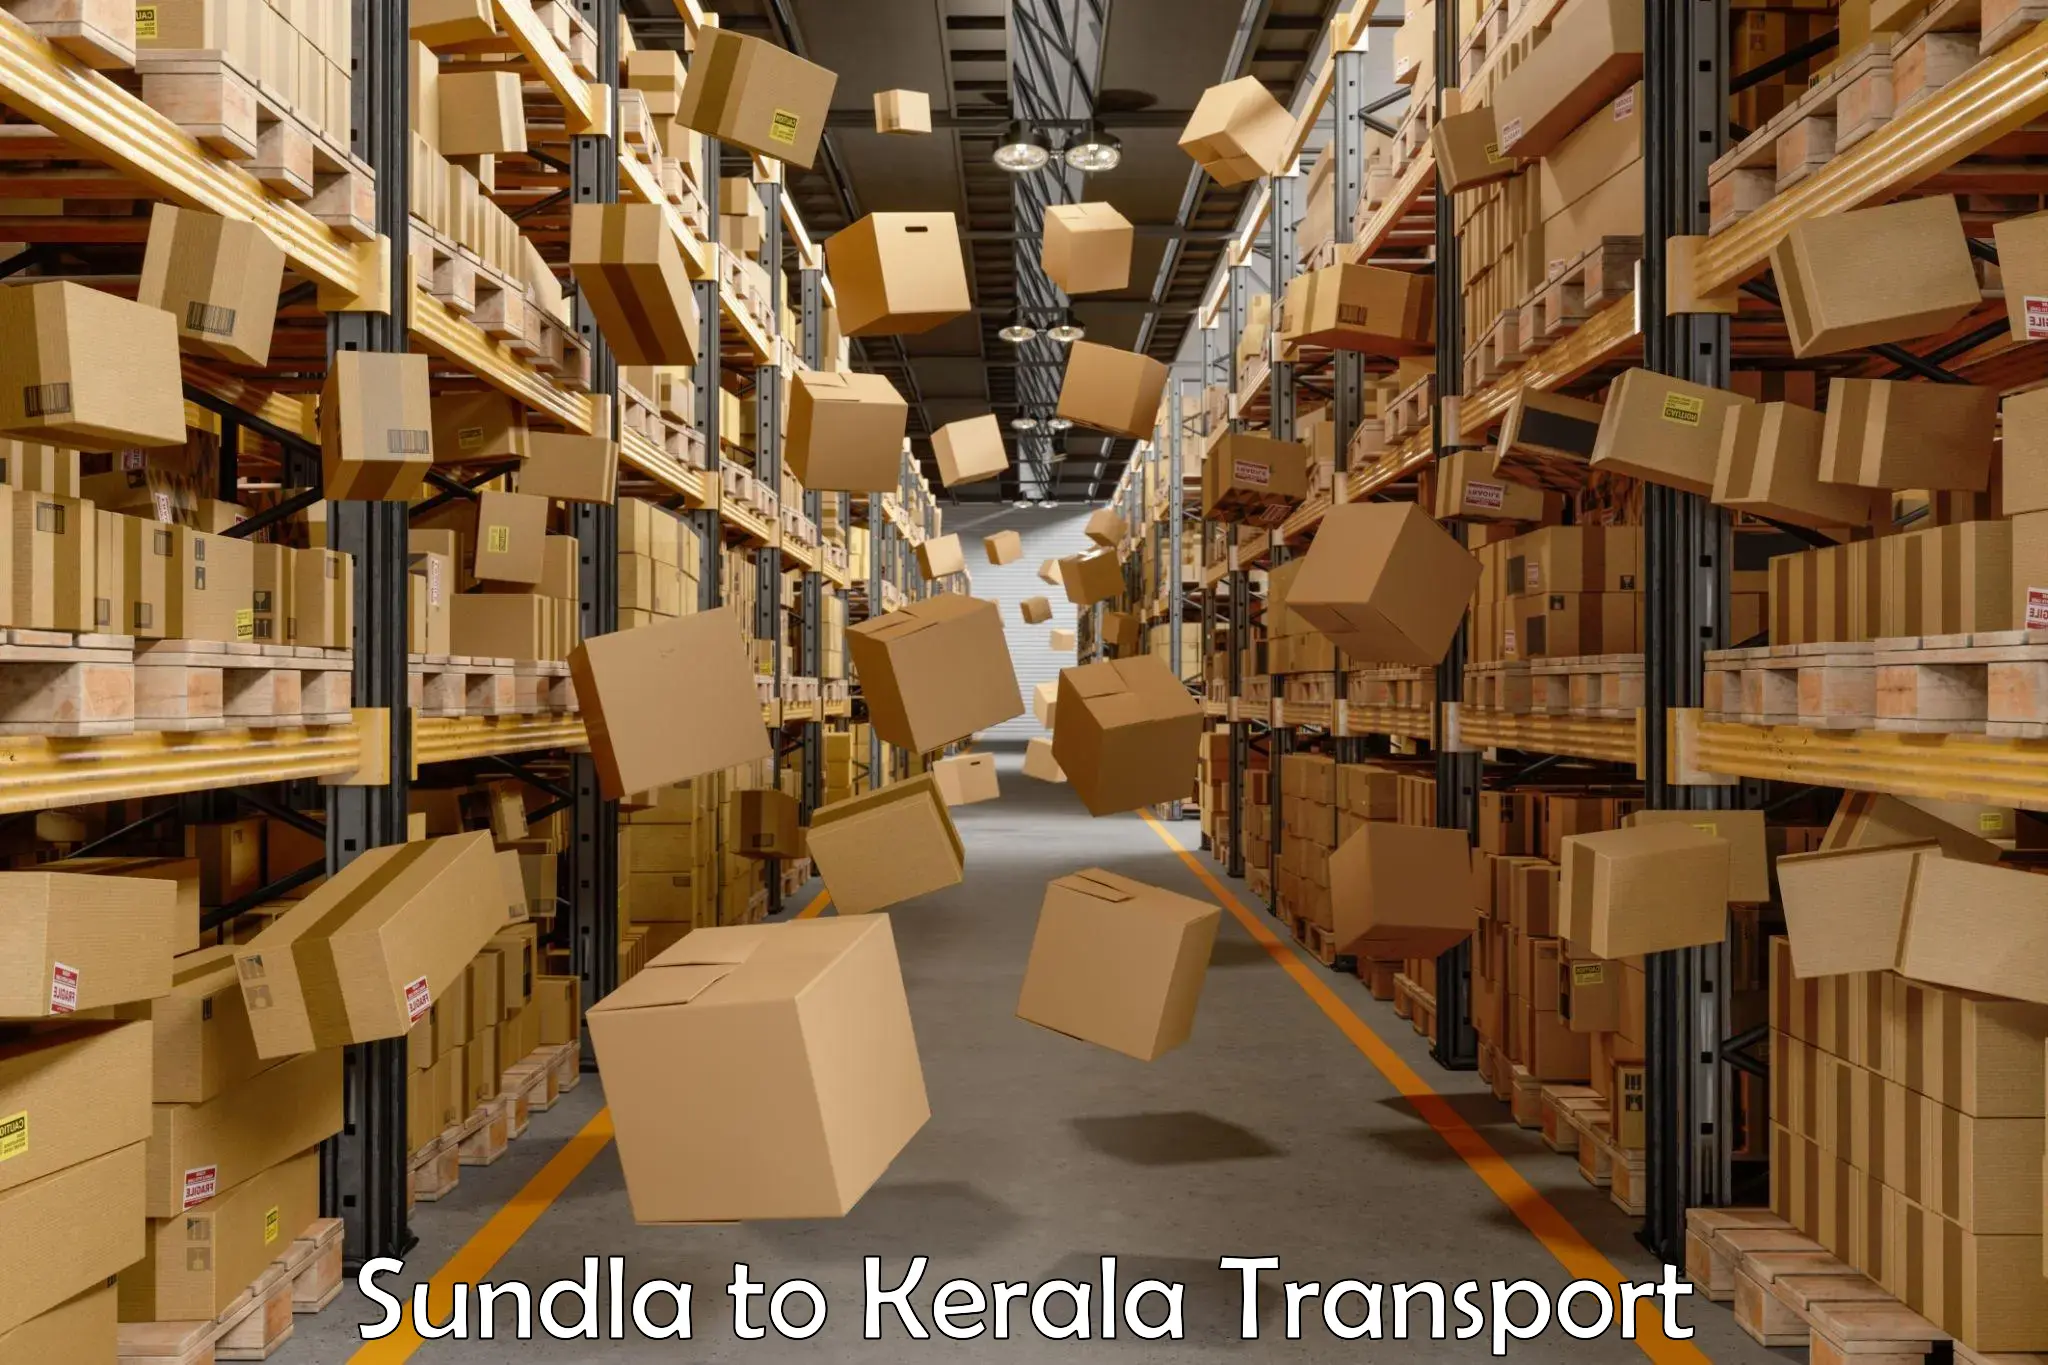 Pick up transport service Sundla to Kerala